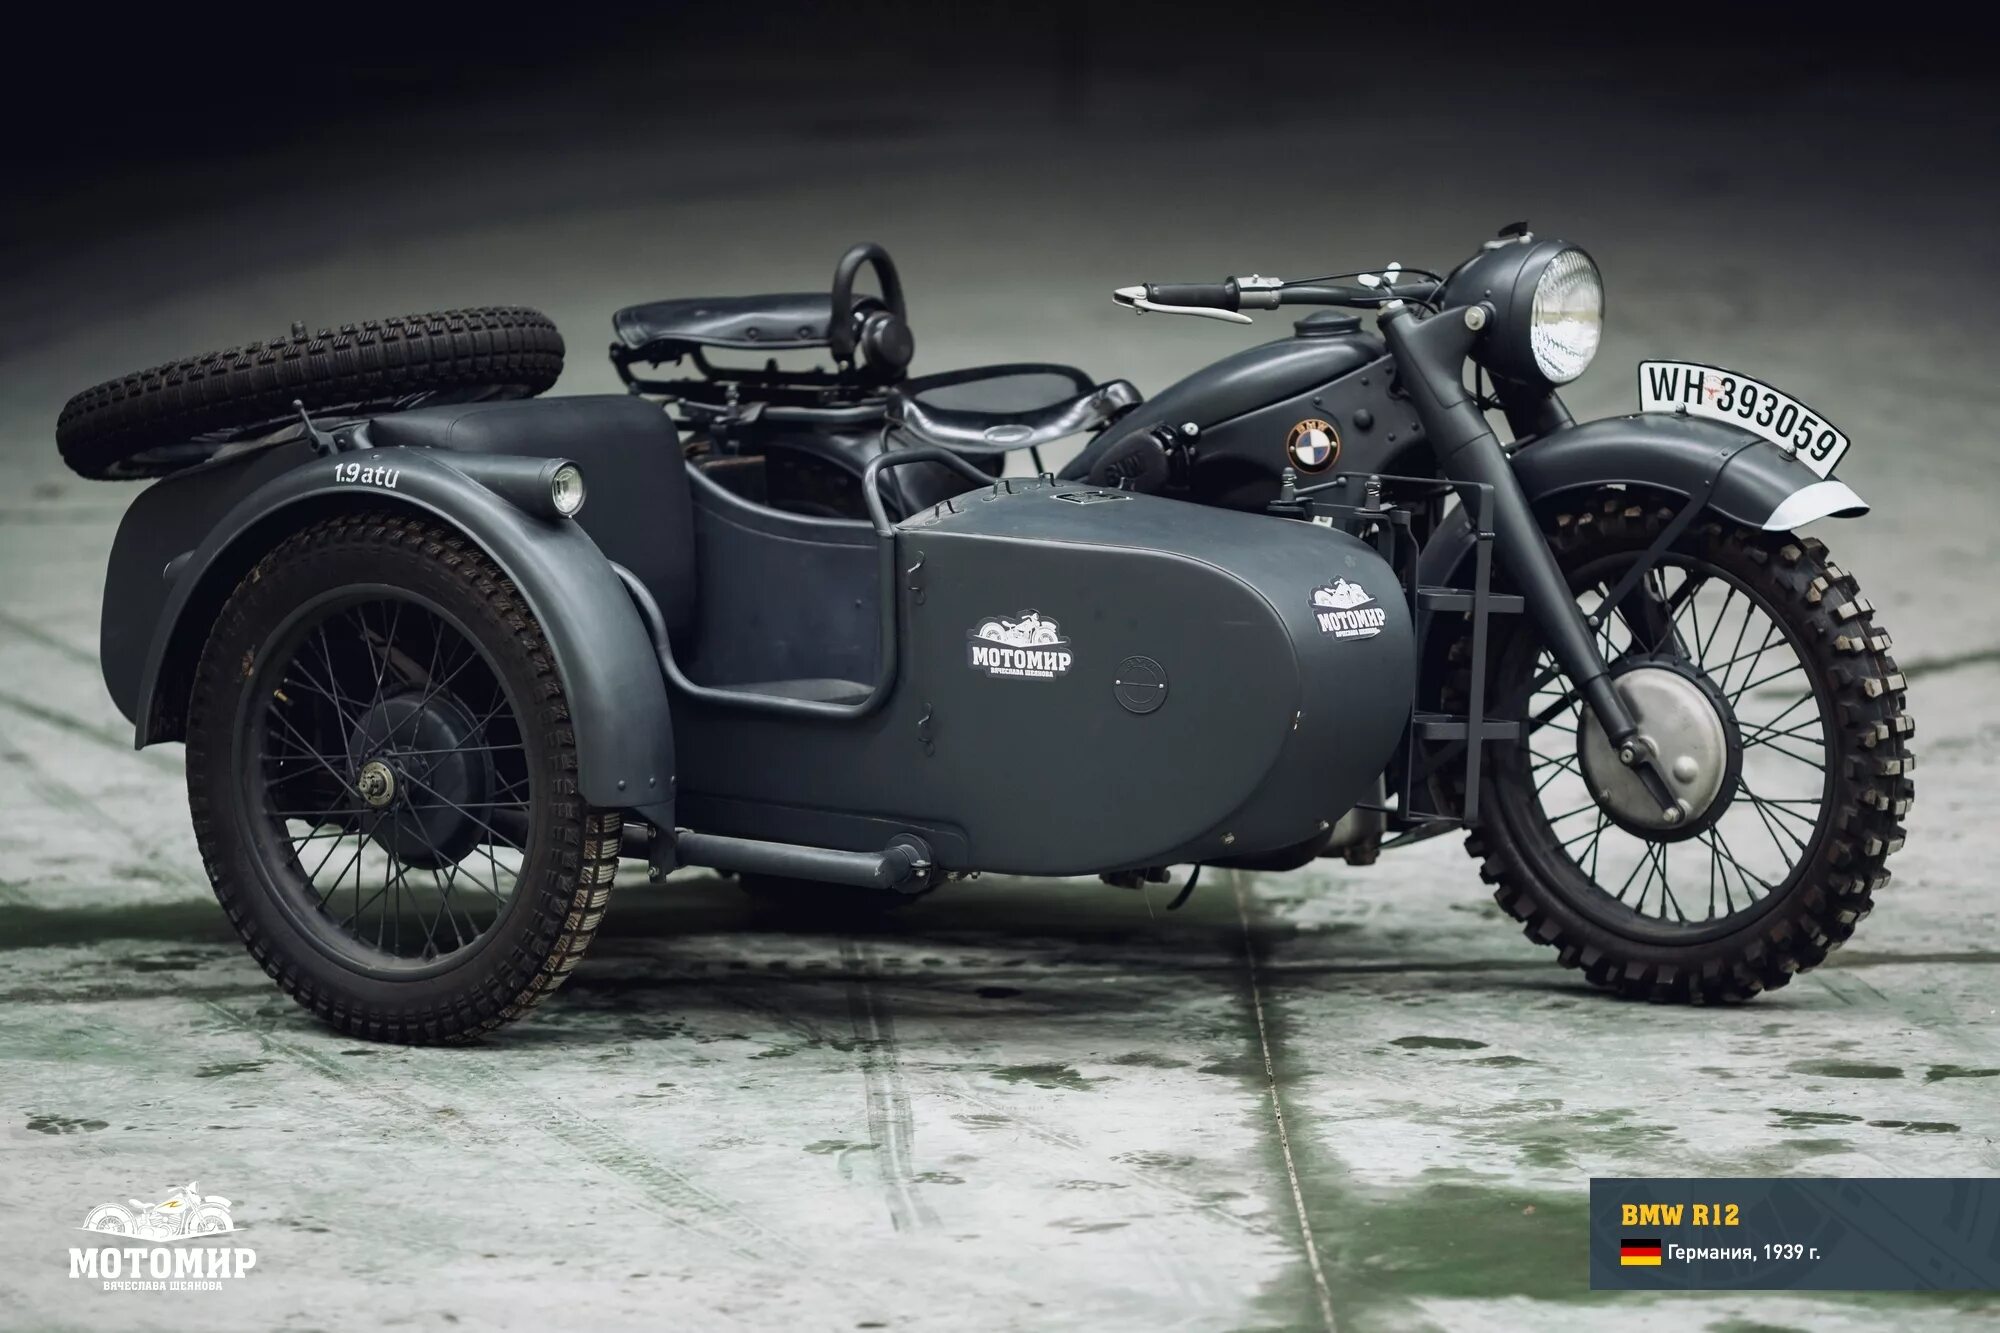 BMW r12. Мотоцикл BMW r12. BMW r12 1939. Немецкий мотоцикл БМВ r12.